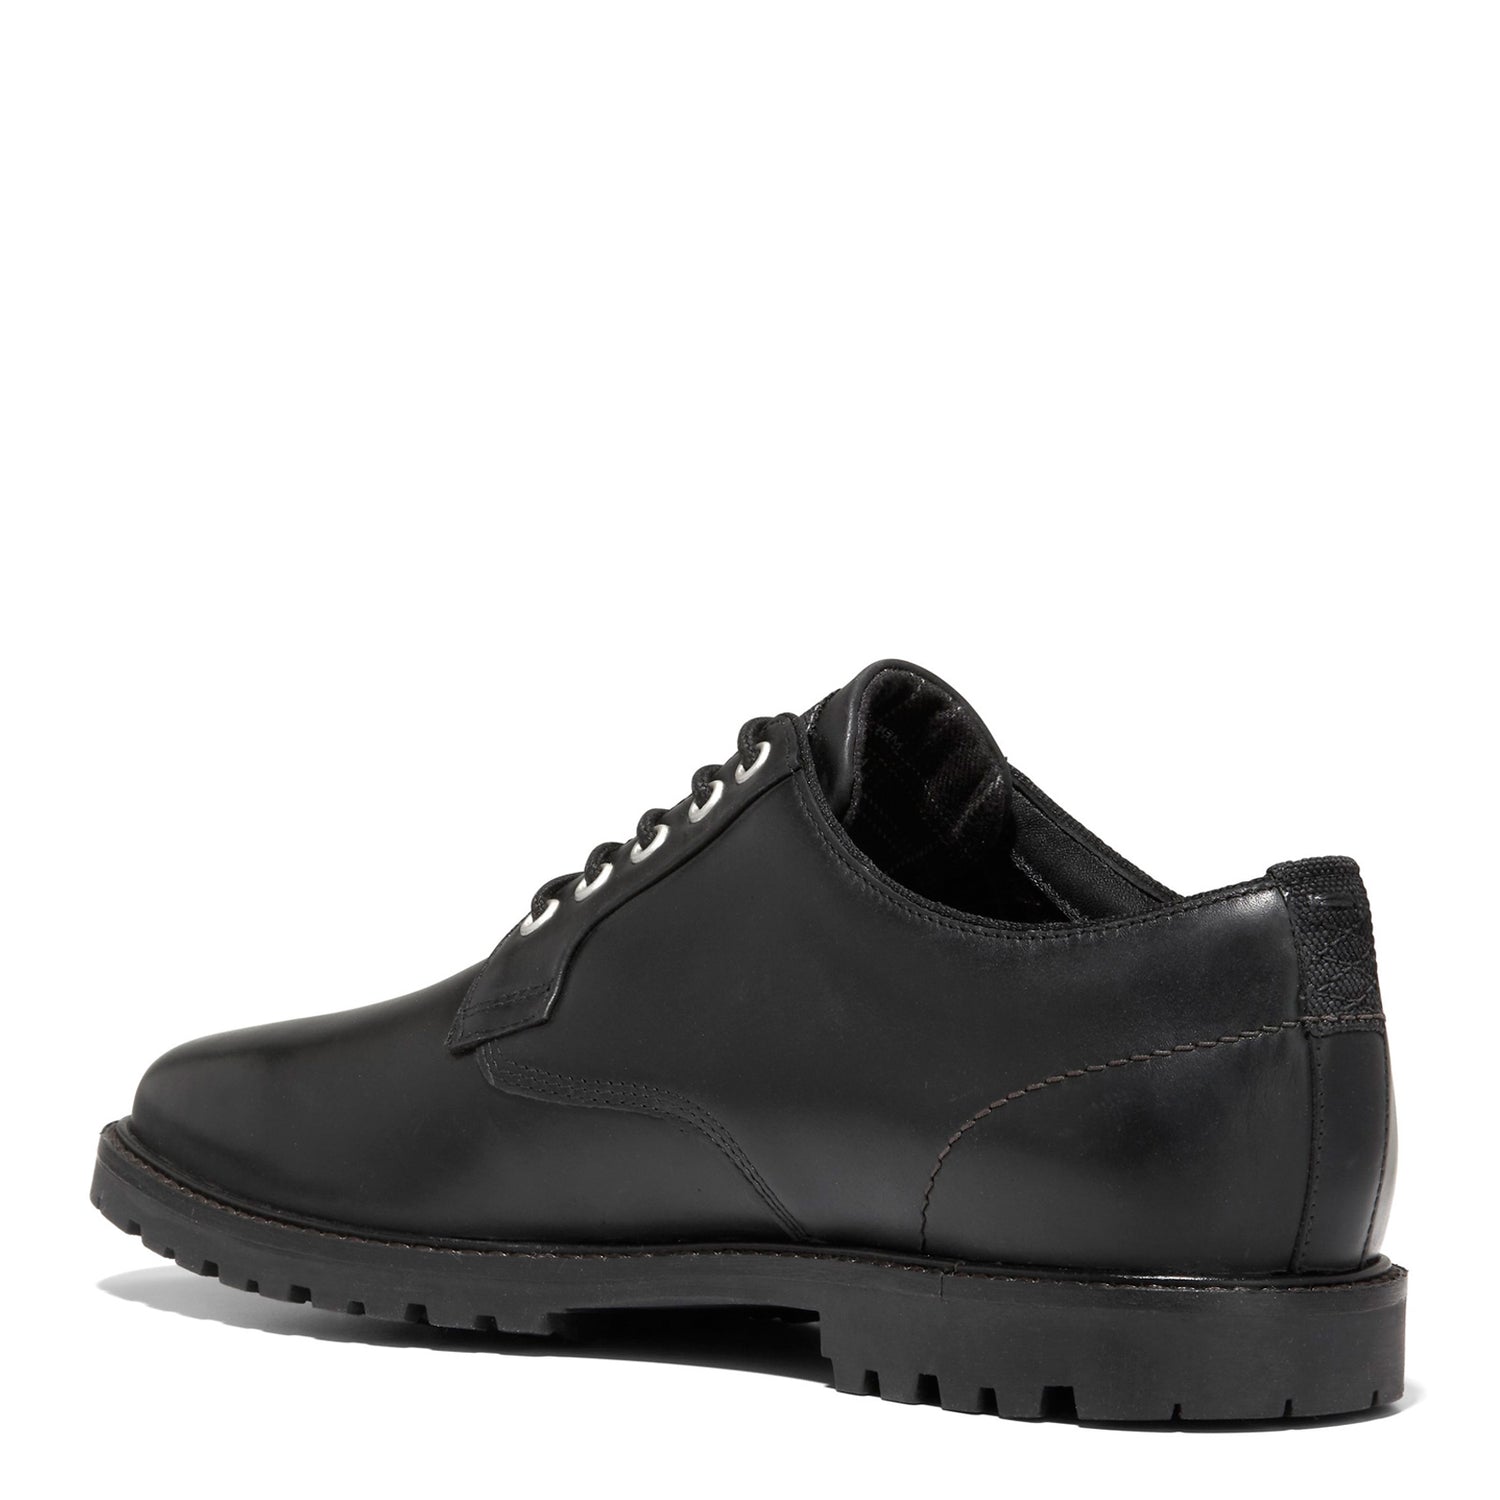 Peltz Shoes  Men's Cole Haan Midland Plain Toe Oxford Black C38472